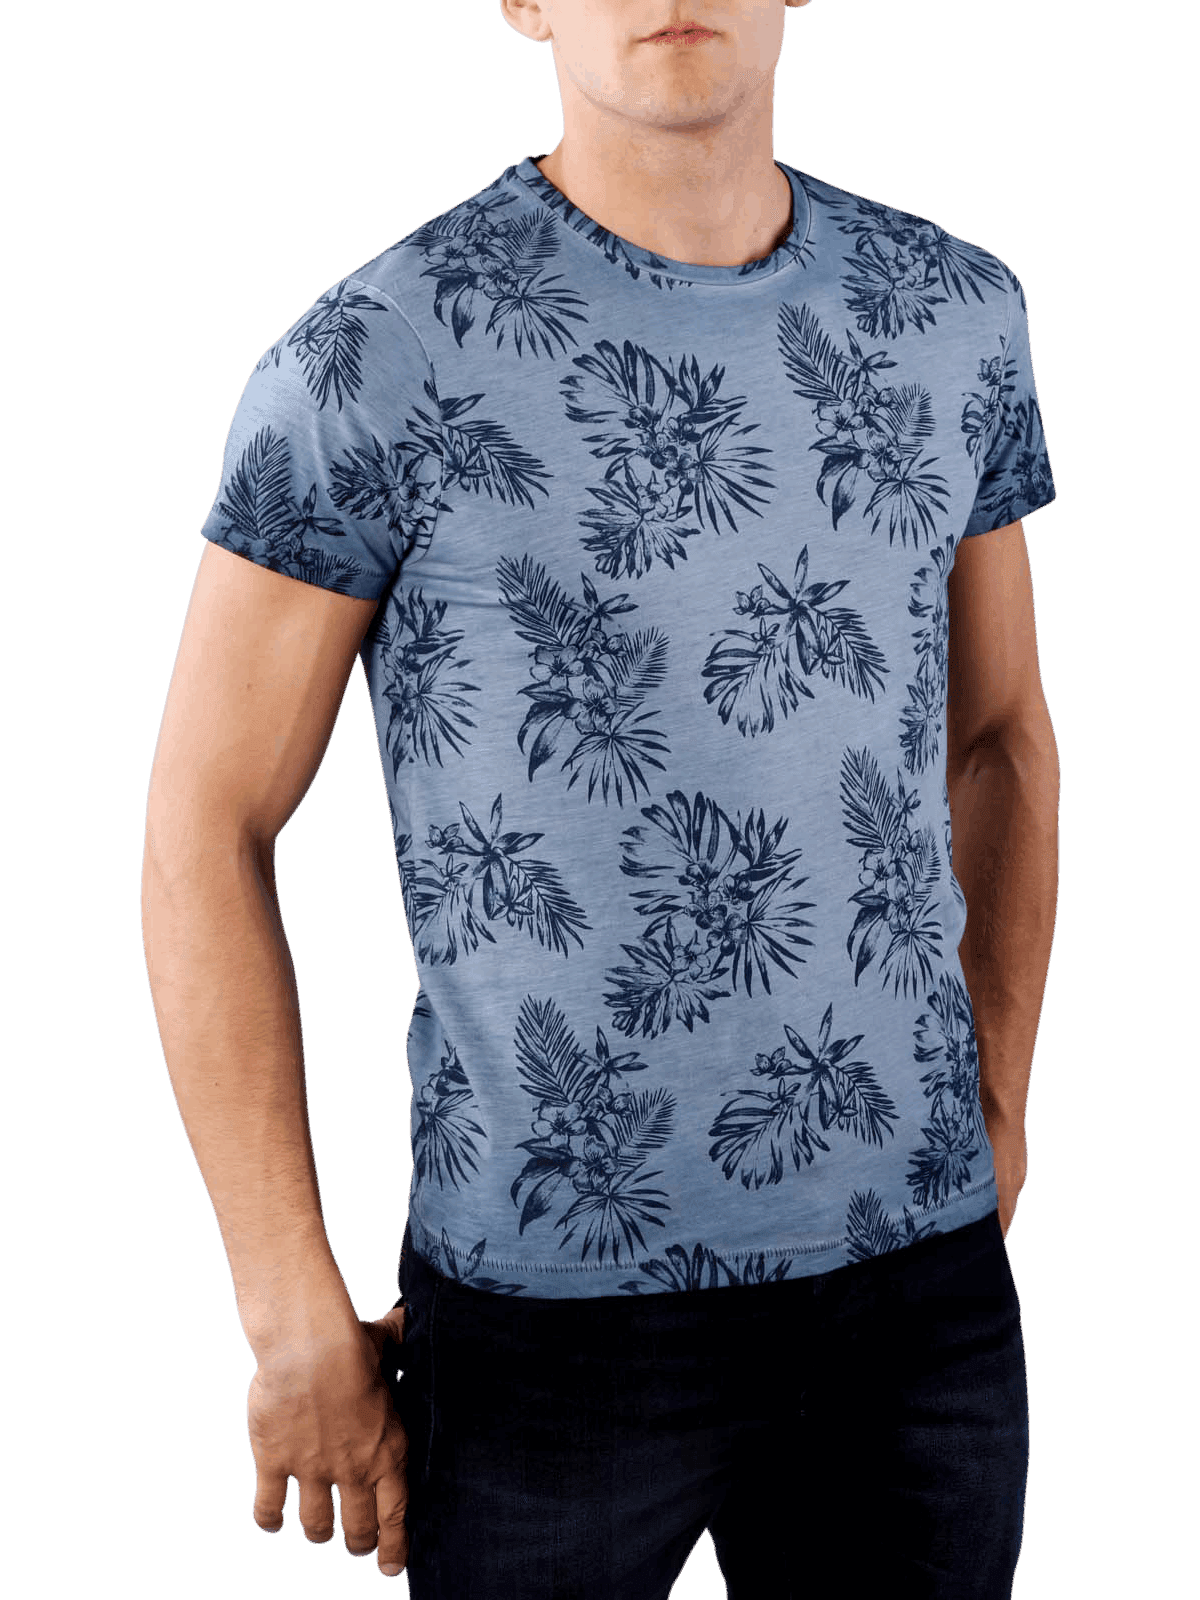 Pepe Blutrop Floral Print Men's T-Shirt - Blue